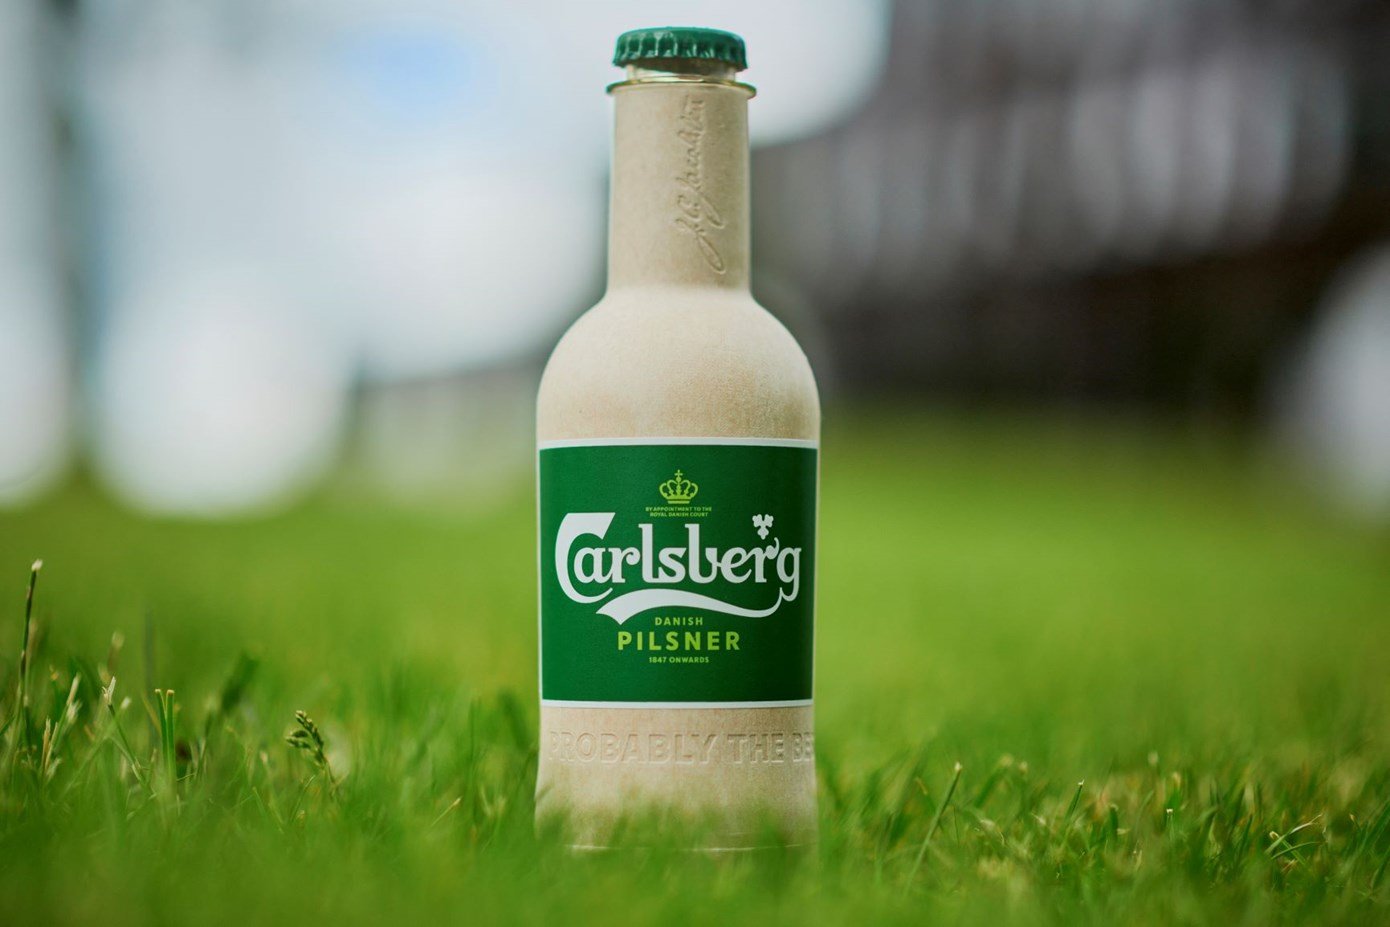 A cervejaria Carlsberg produziu uma garrafa a partir de fibras naturais